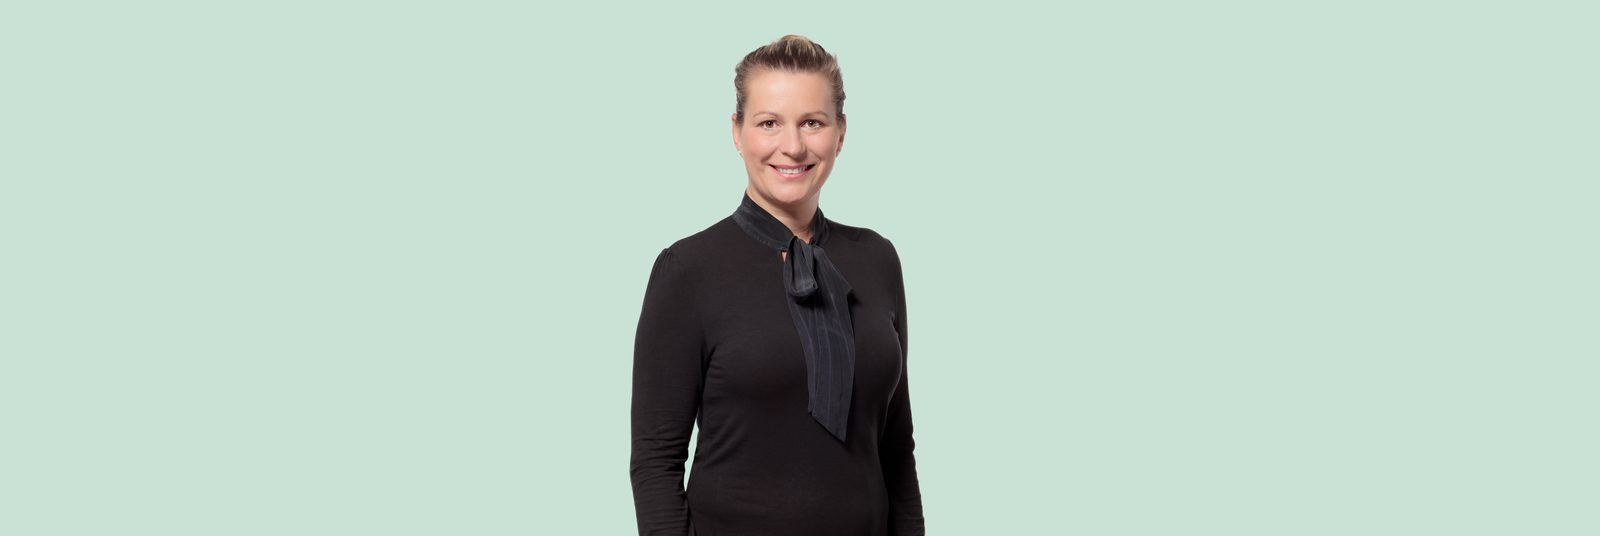 Anita Thielken - unsere neue Leiterin im Aussendienst